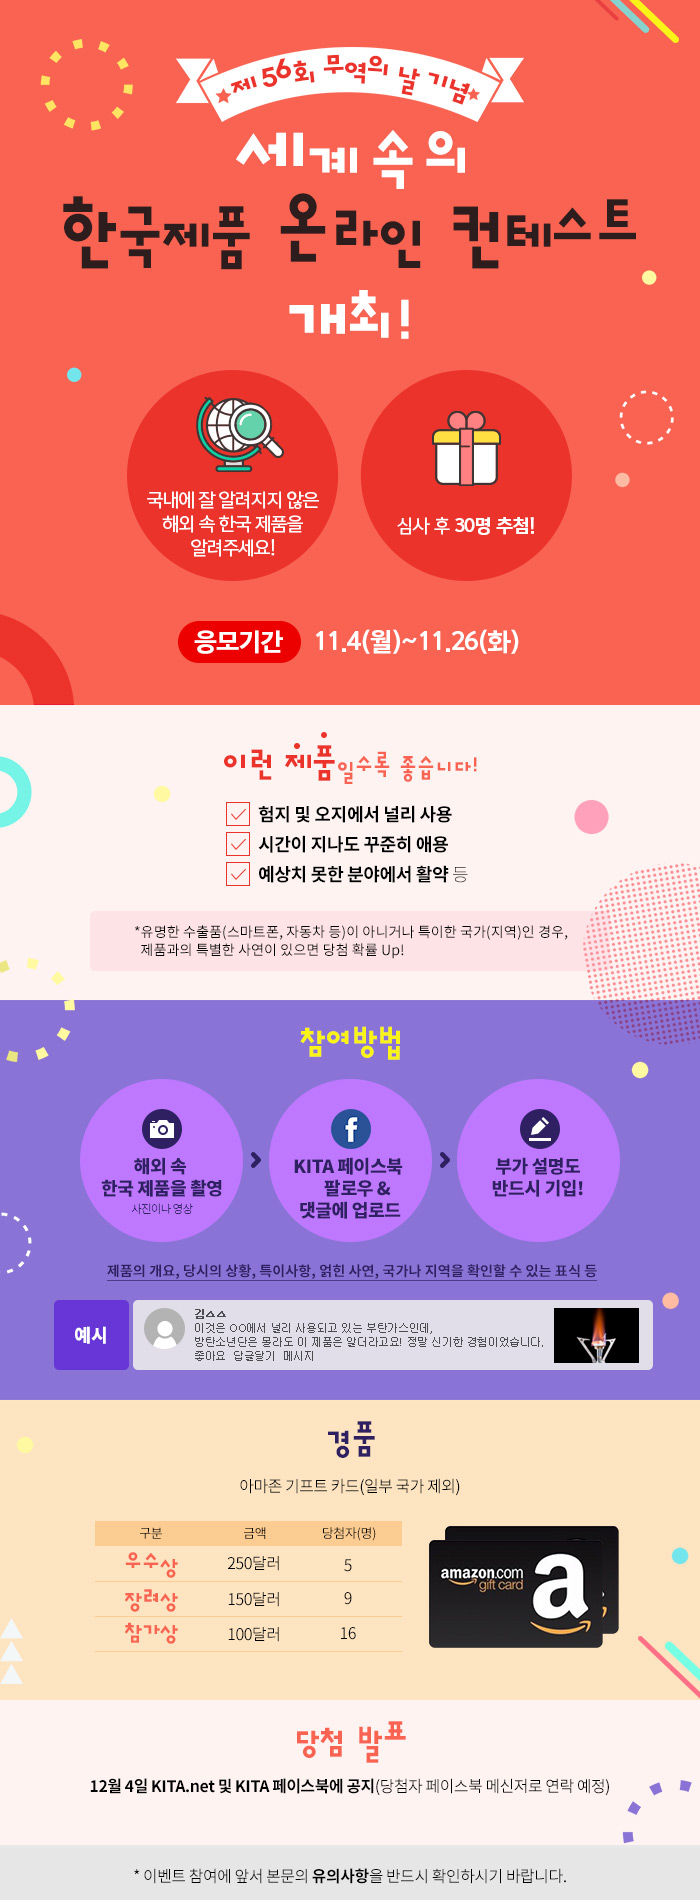 제56회 무역의 날 기념 세계속의 한국제품 온라인 컨테스트 개최